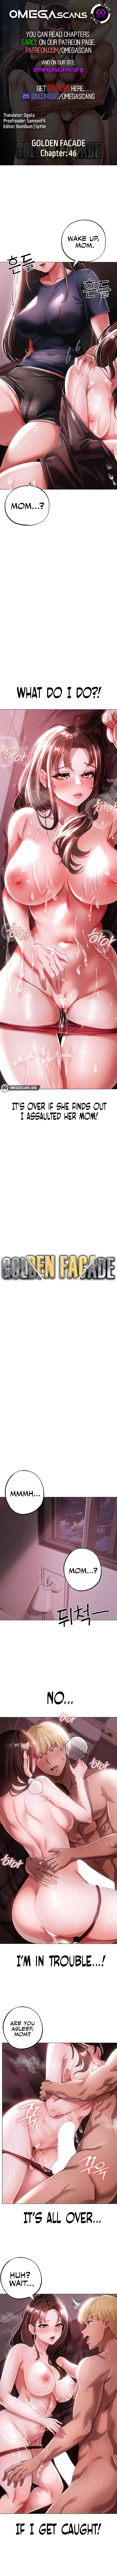 Golden Facade NEW image